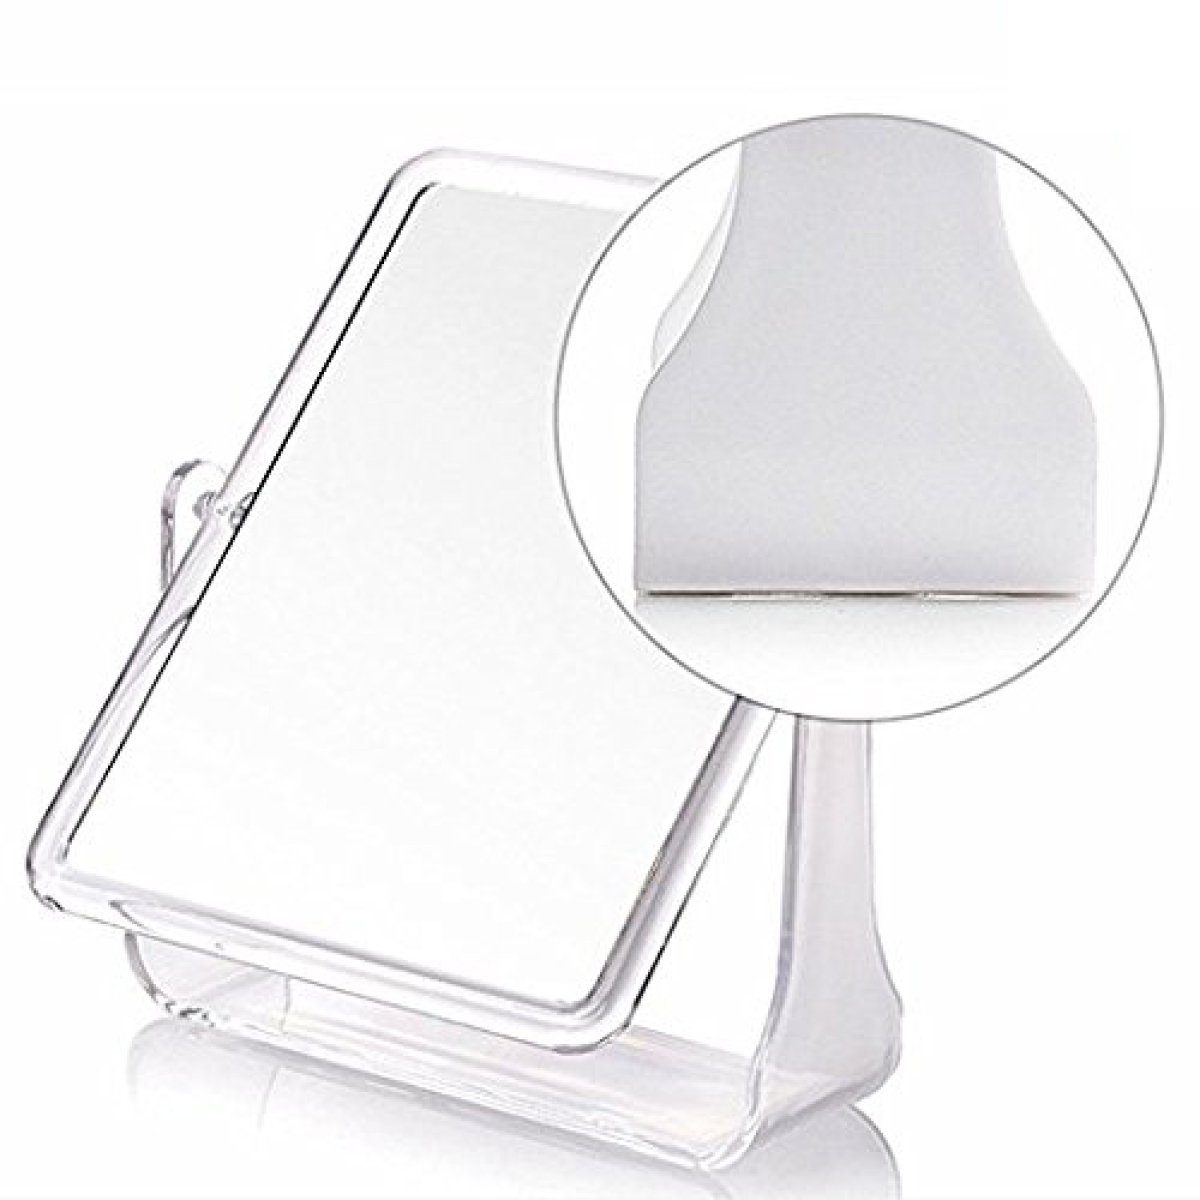 Mirrors 360° Dressing Swivel Schminkspiegel für Mirror Table Makeup Vanity Bathroom Jormftte